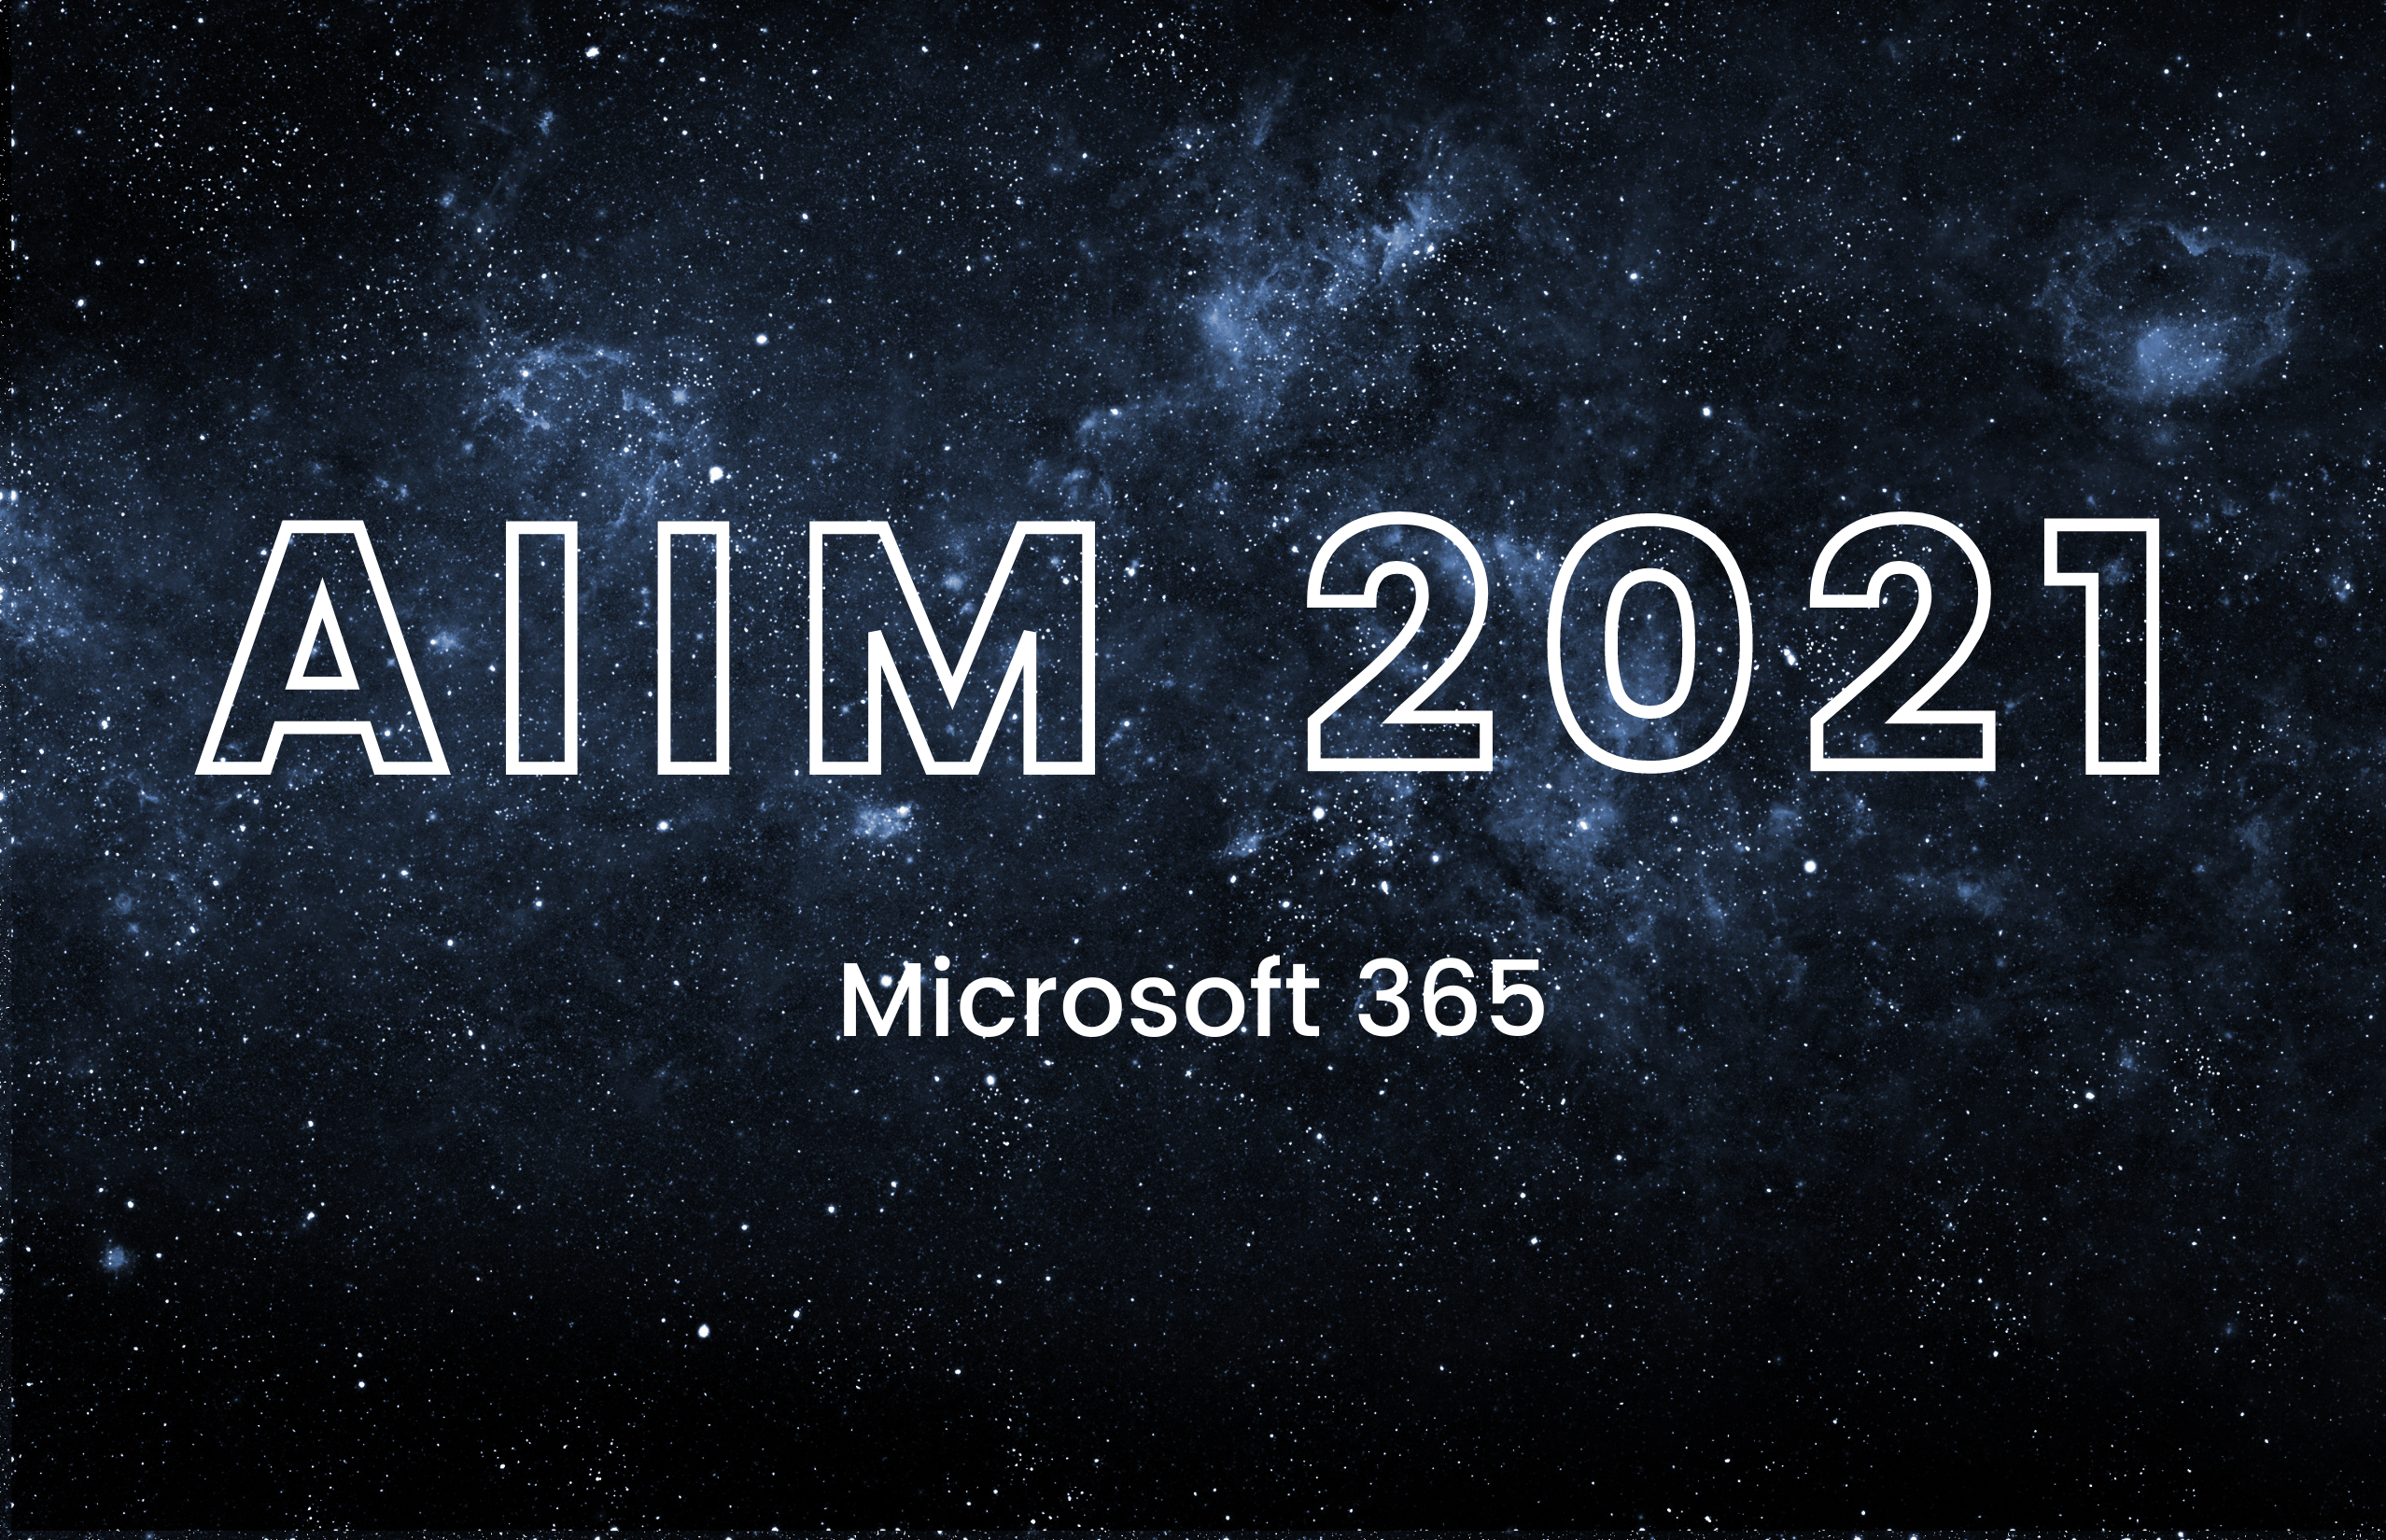 AIIM 2021 Microsoft 365